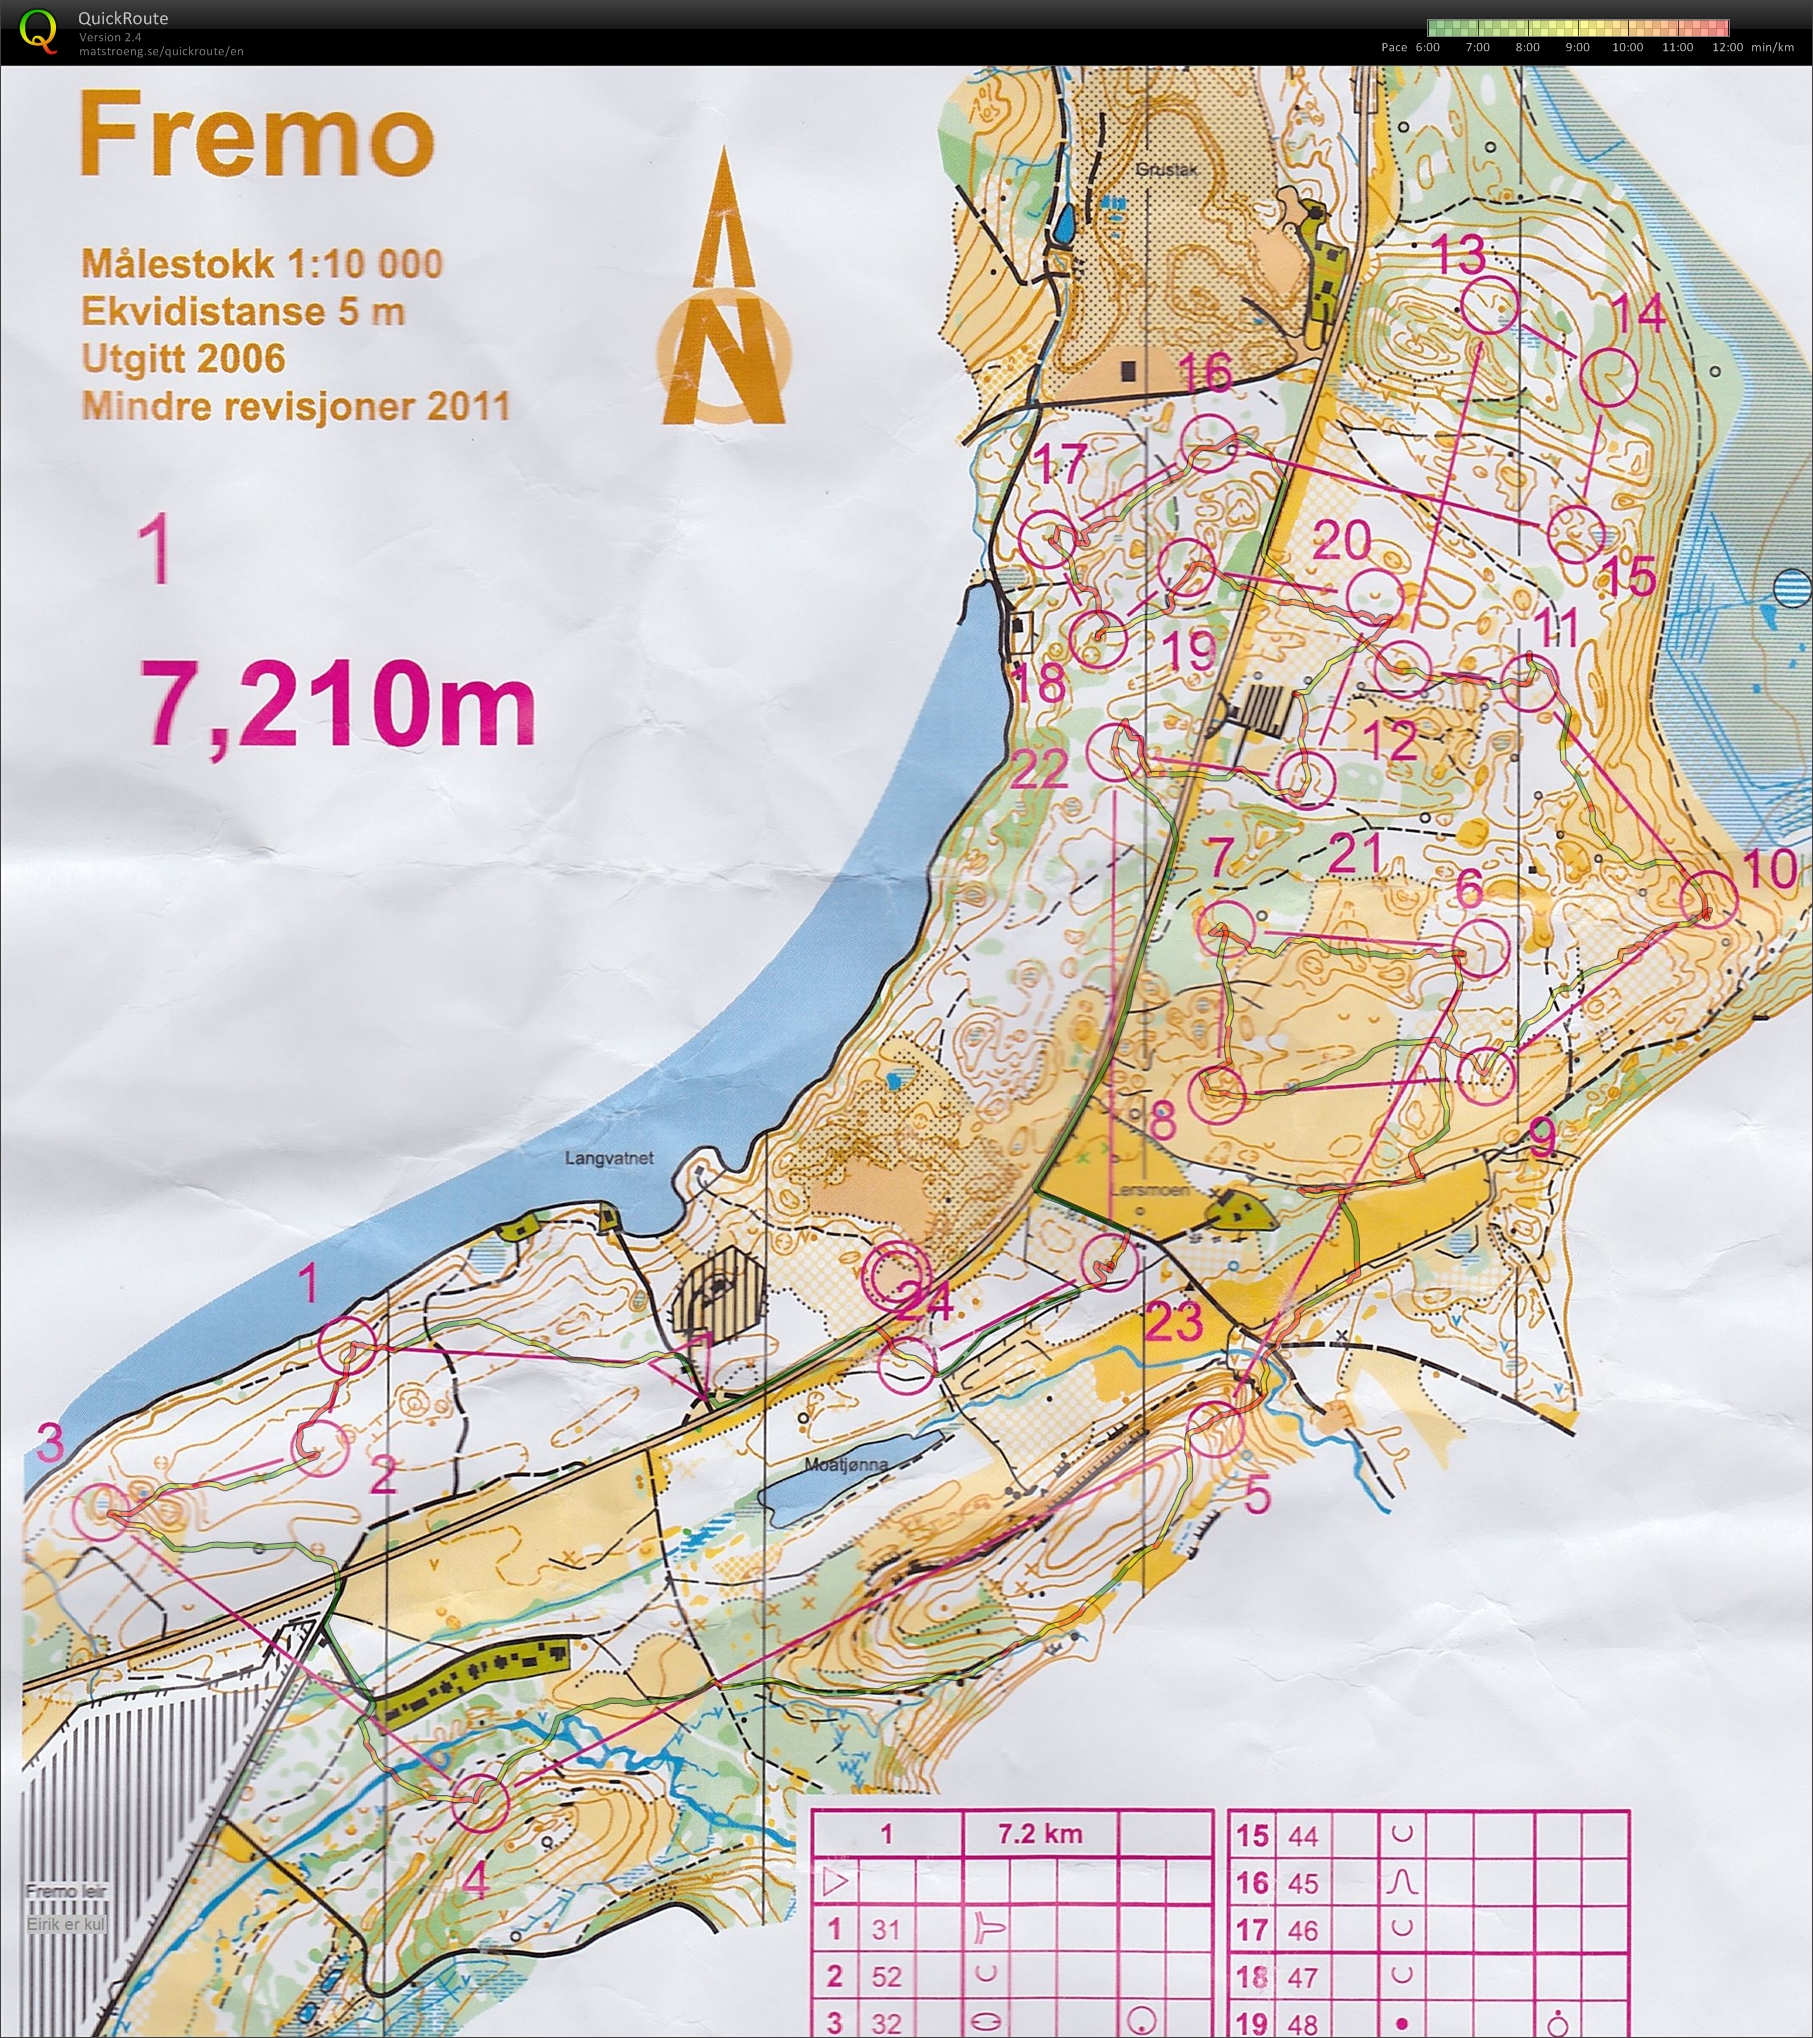 Trening, Fremo (2013-10-06)